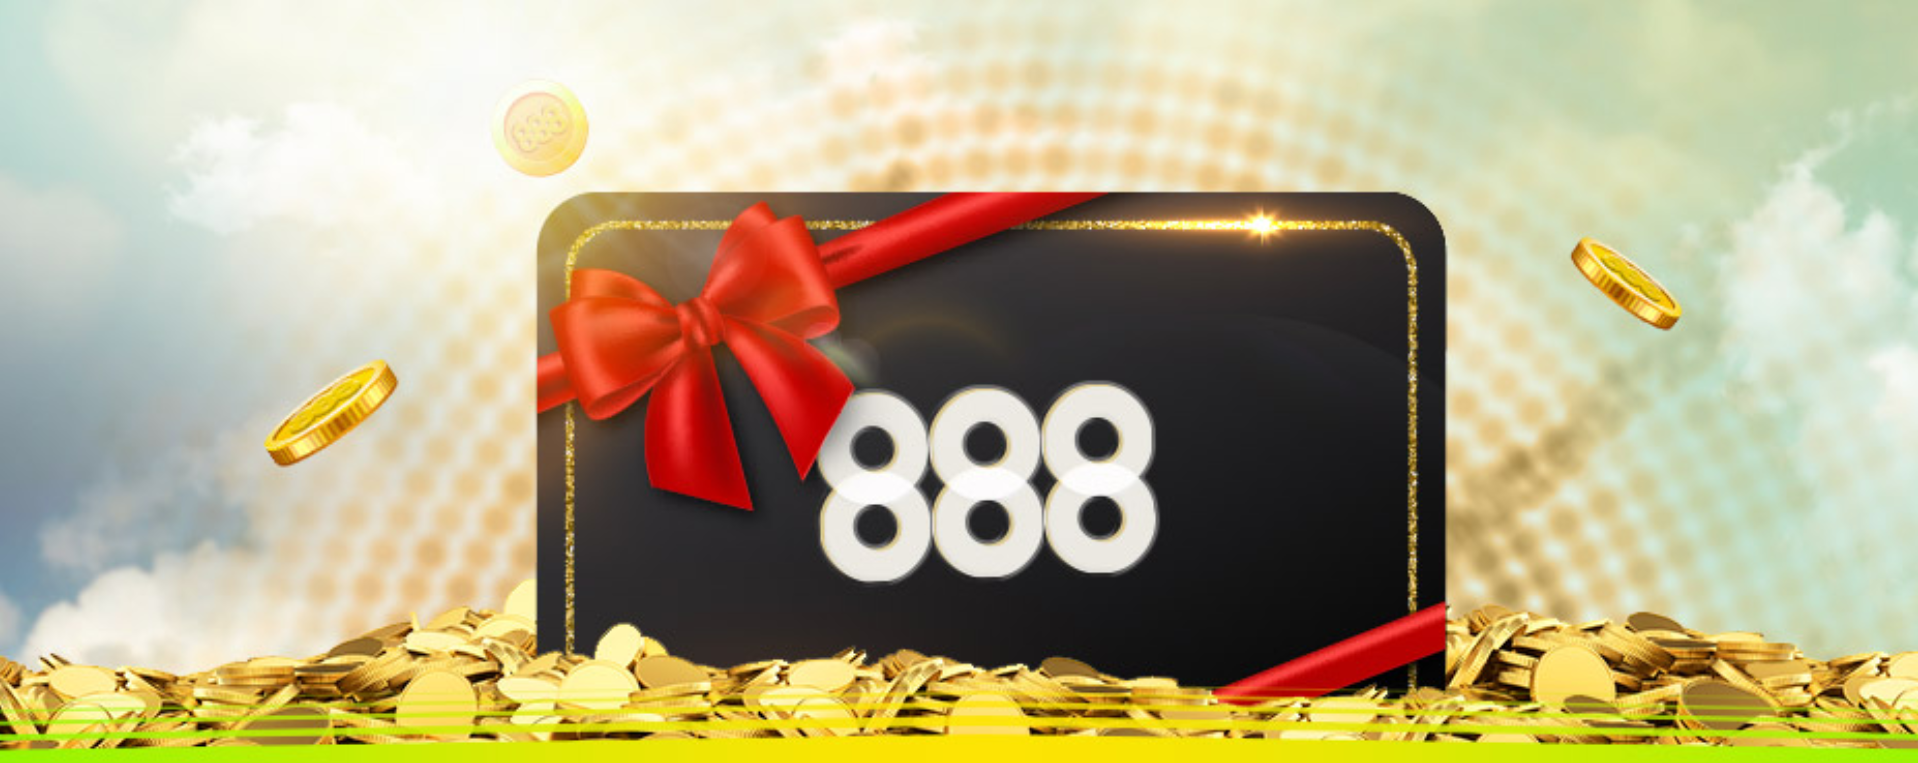 888-casino-deposit-bonus